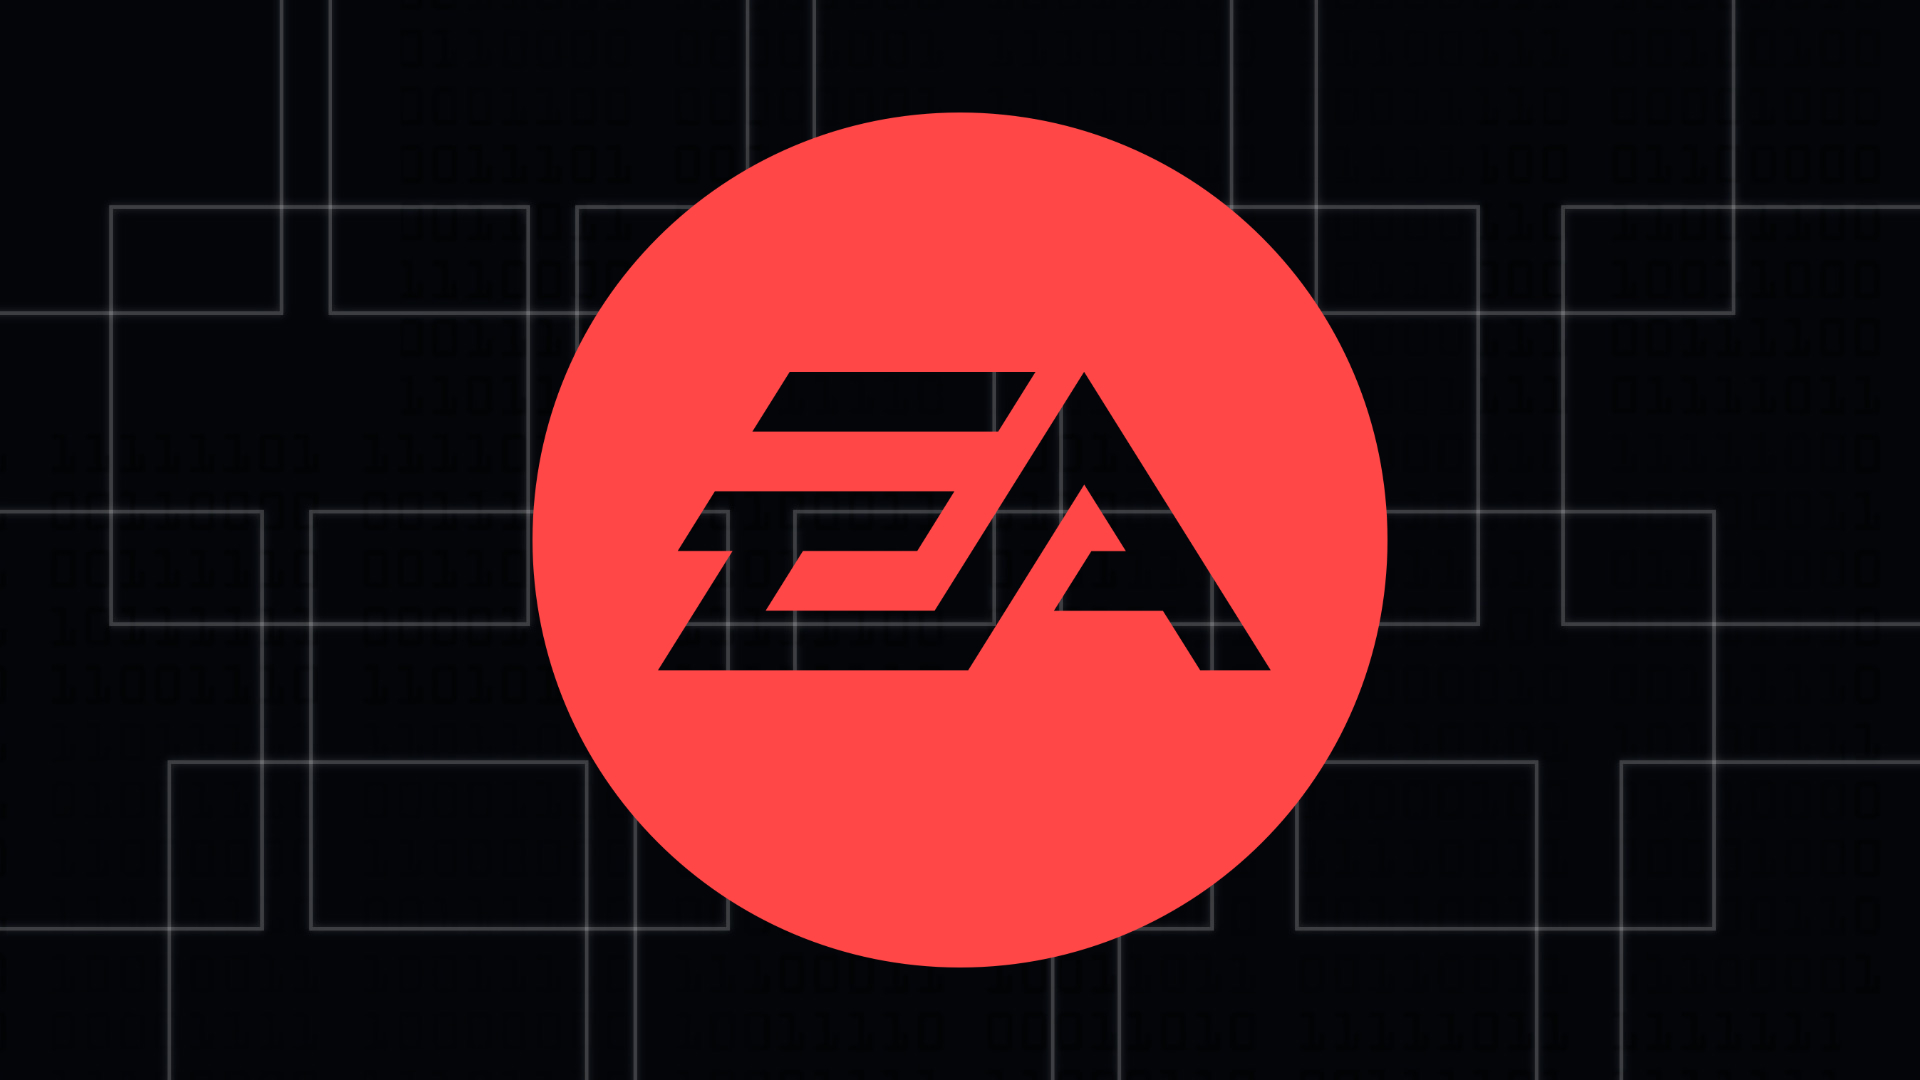 《戰地2042》新賽季獲得成功 EA將加倍投入支持